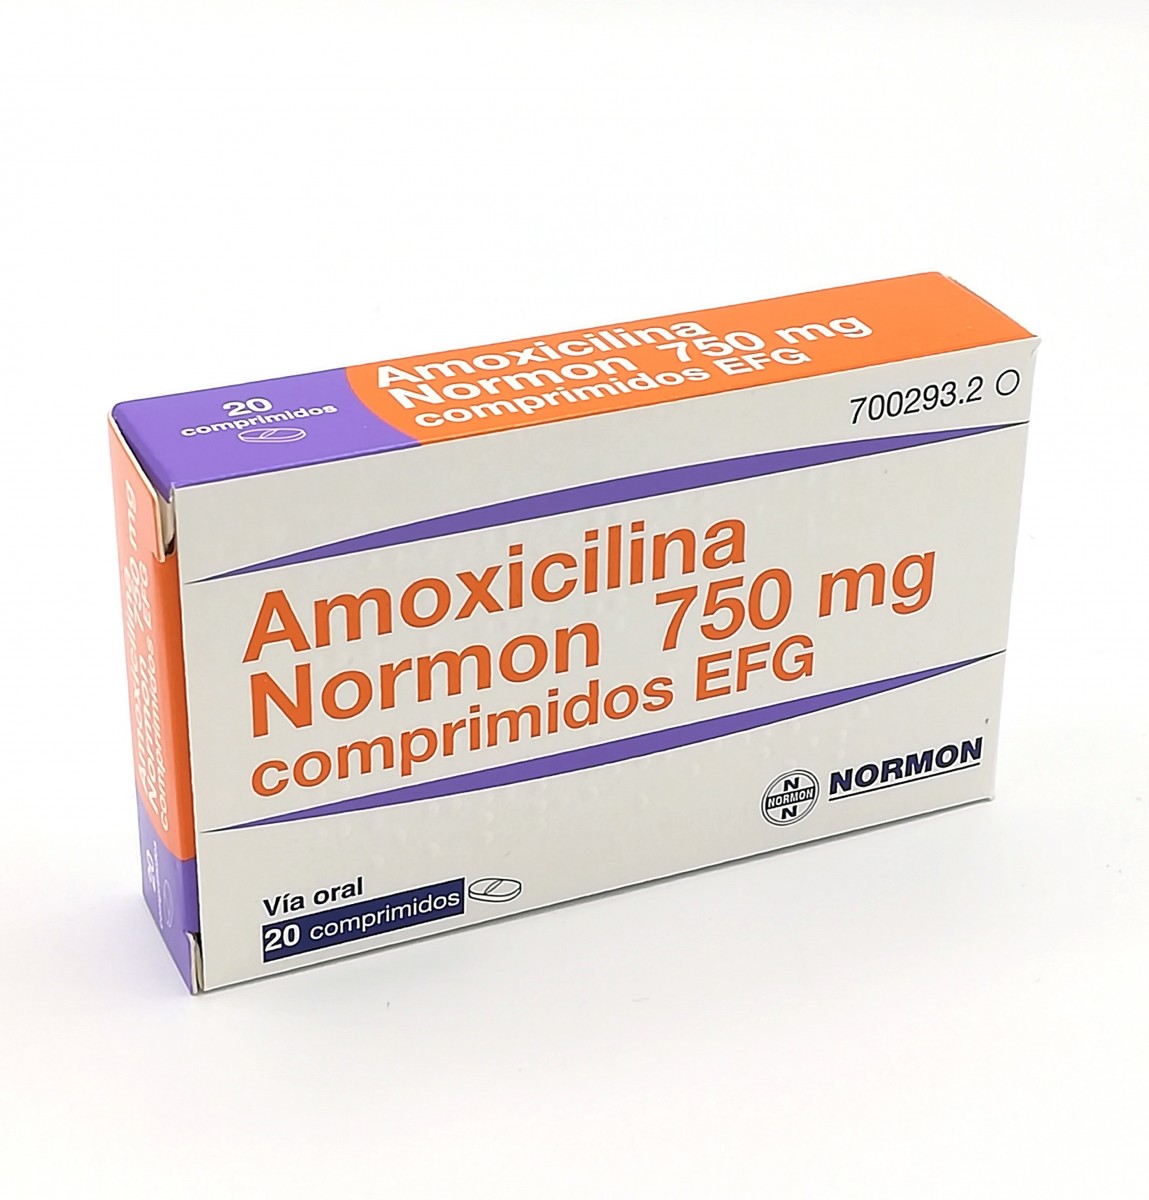 AMOXICILINA NORMON 750 MG COMPRIMIDOS EFG  , 12 comprimidos fotografía del envase.